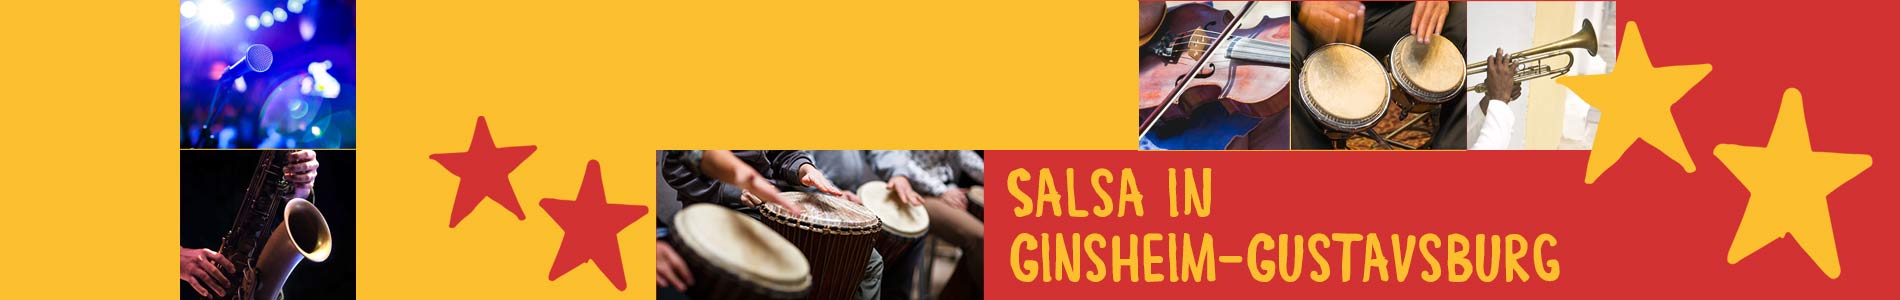 Salsa in Ginsheim-Gustavsburg – Salsa lernen und tanzen, Tanzkurse, Partys, Veranstaltungen